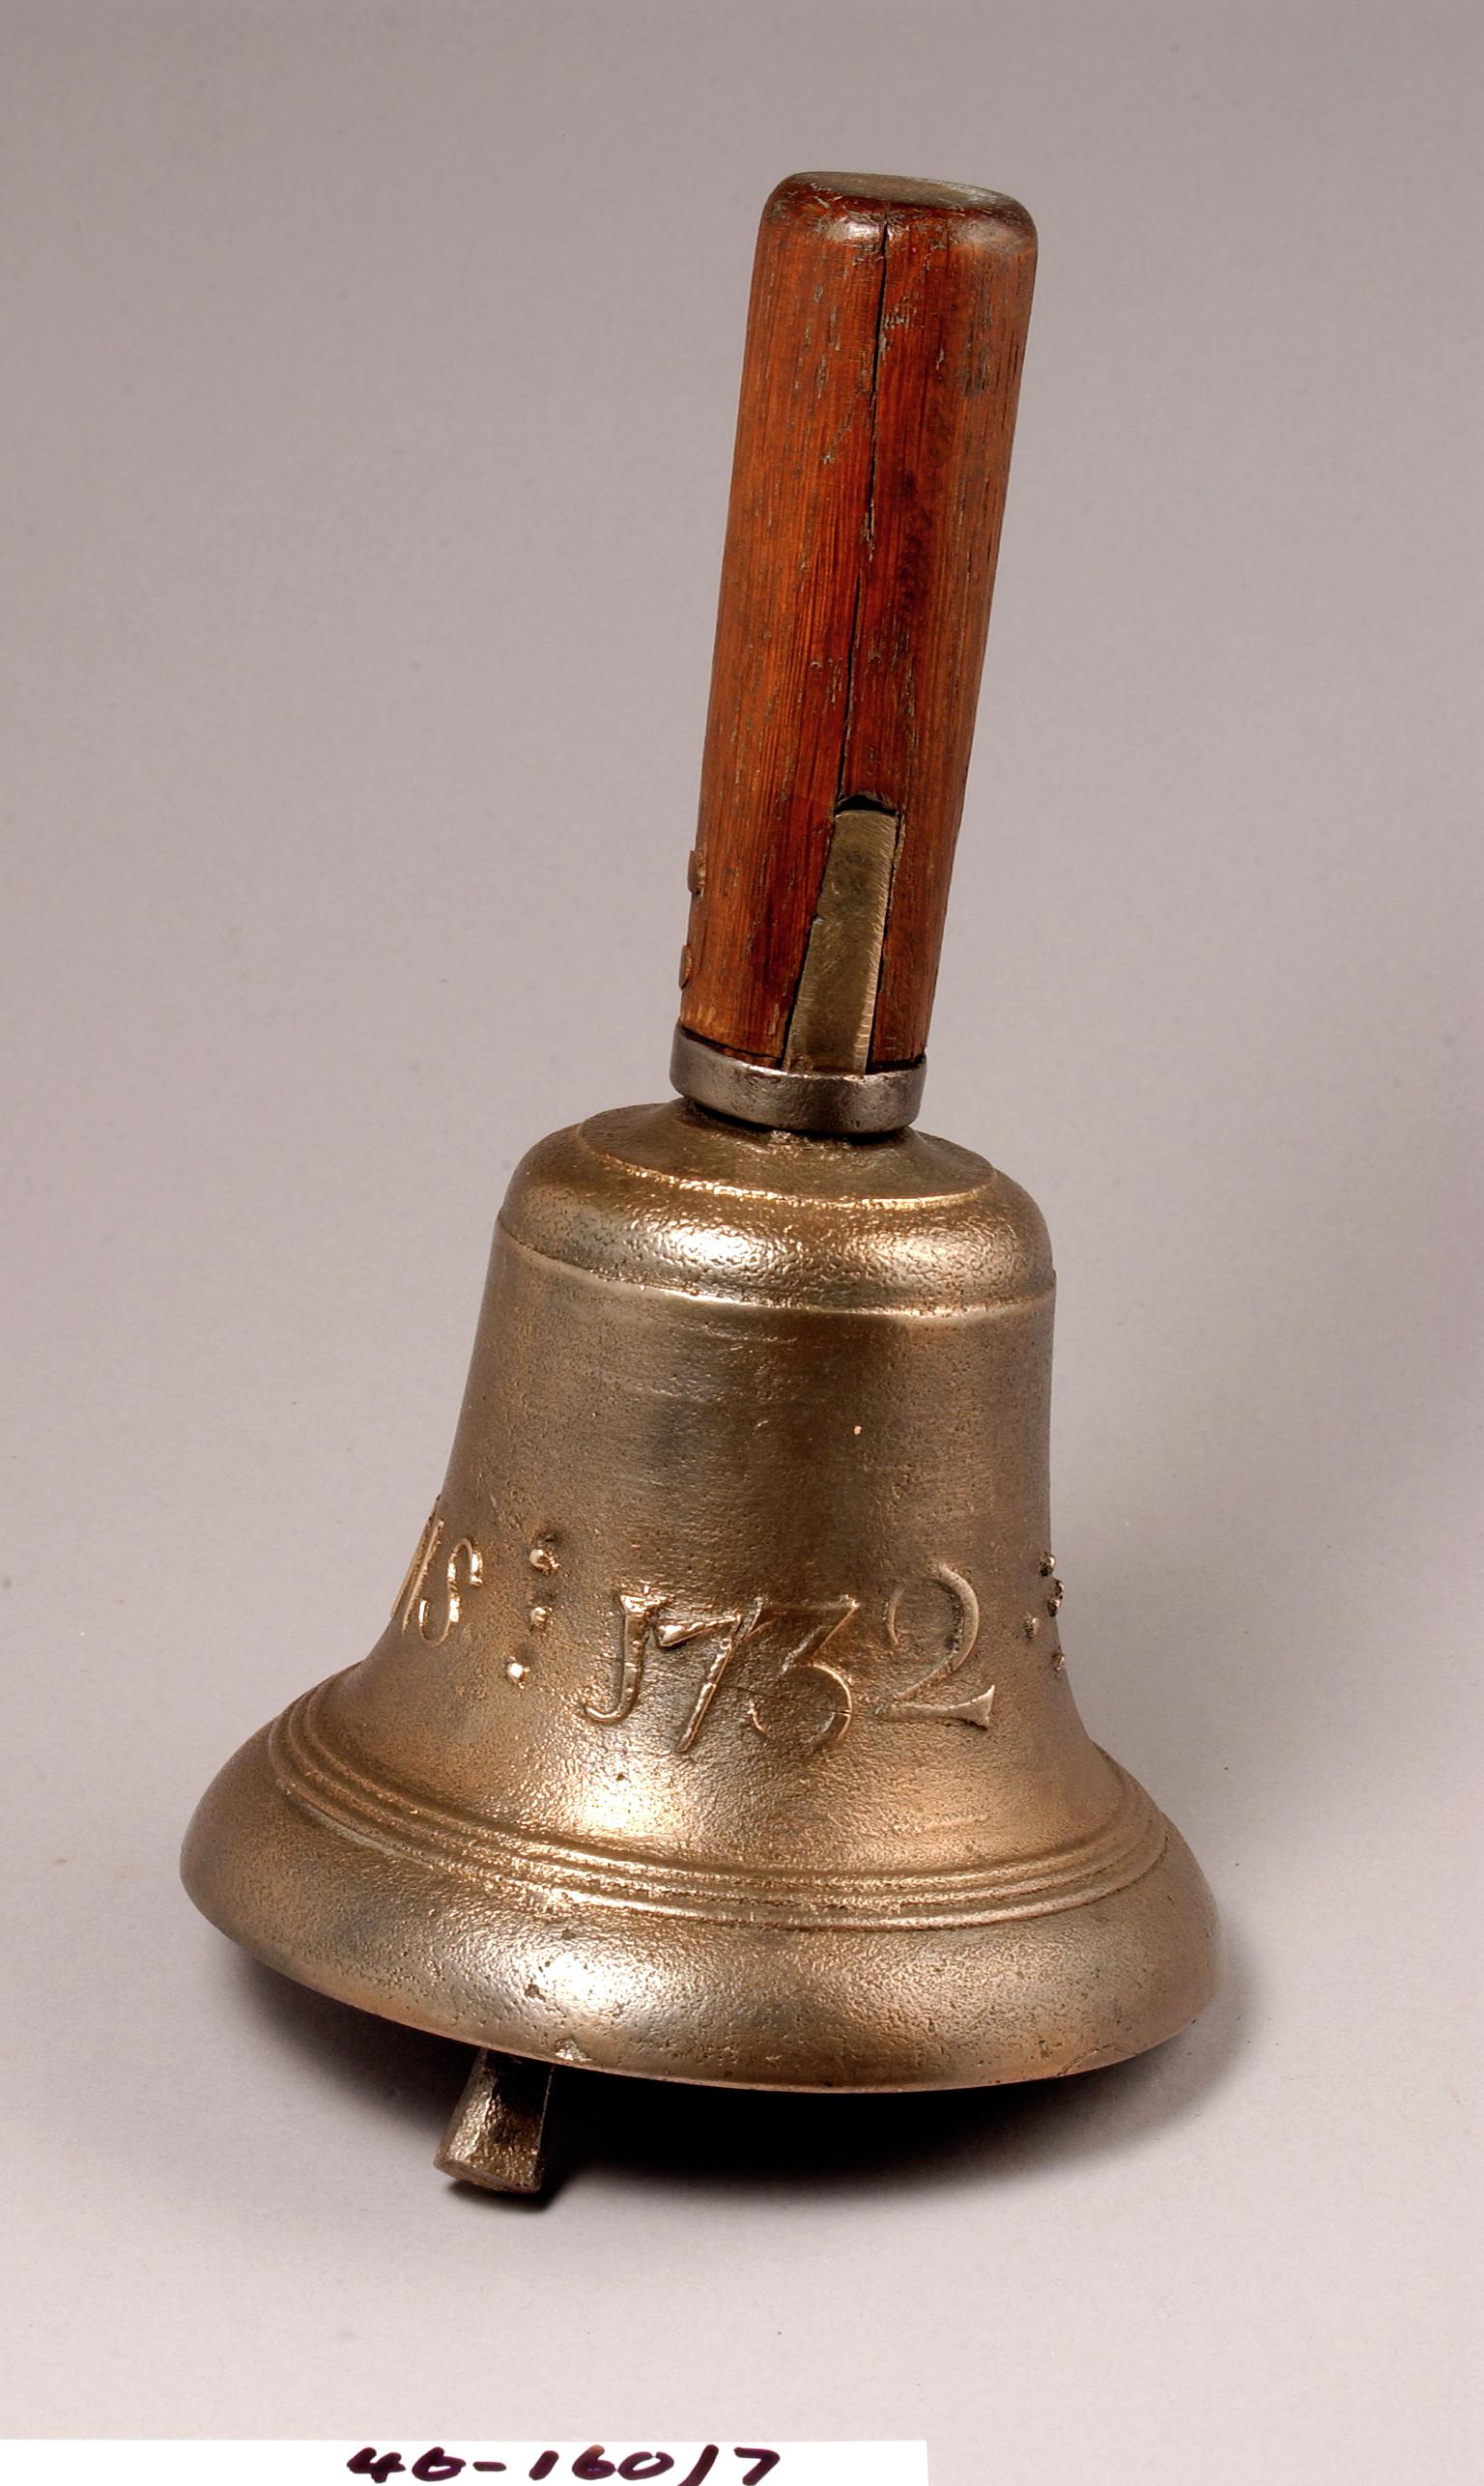 Town crier's bell